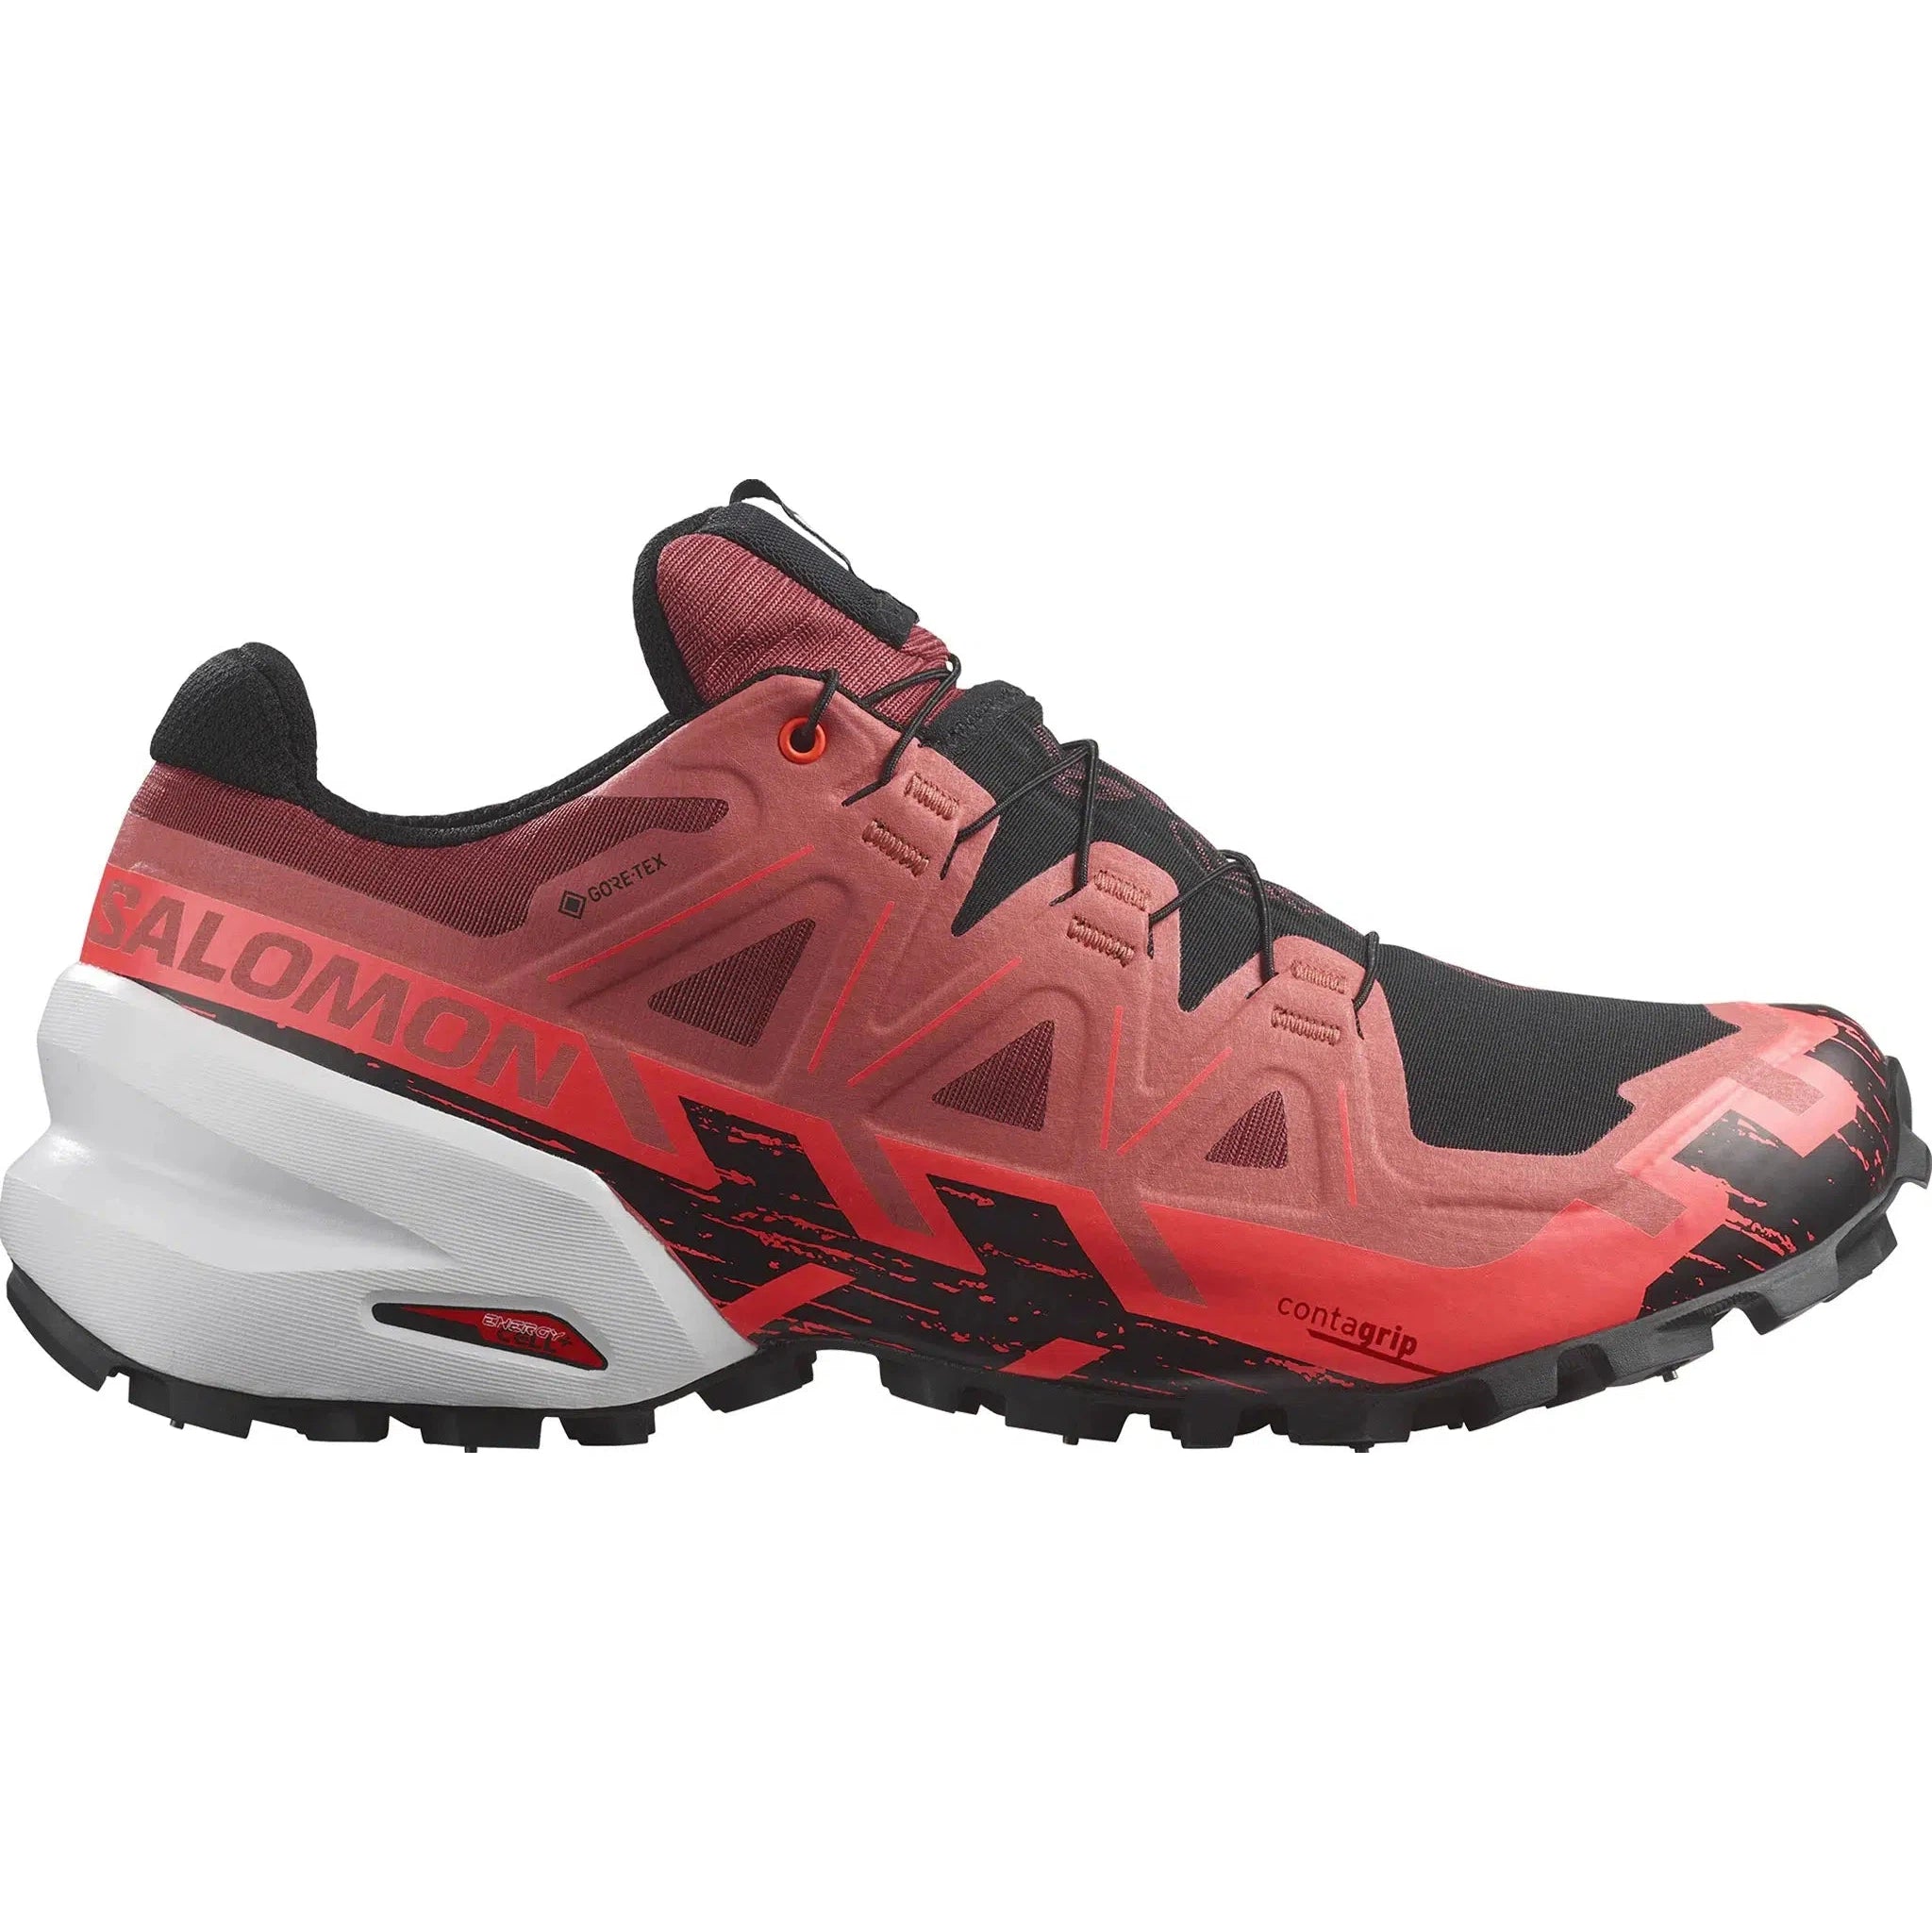 Men's Spikecross 6 GTX Trail Running Shoes